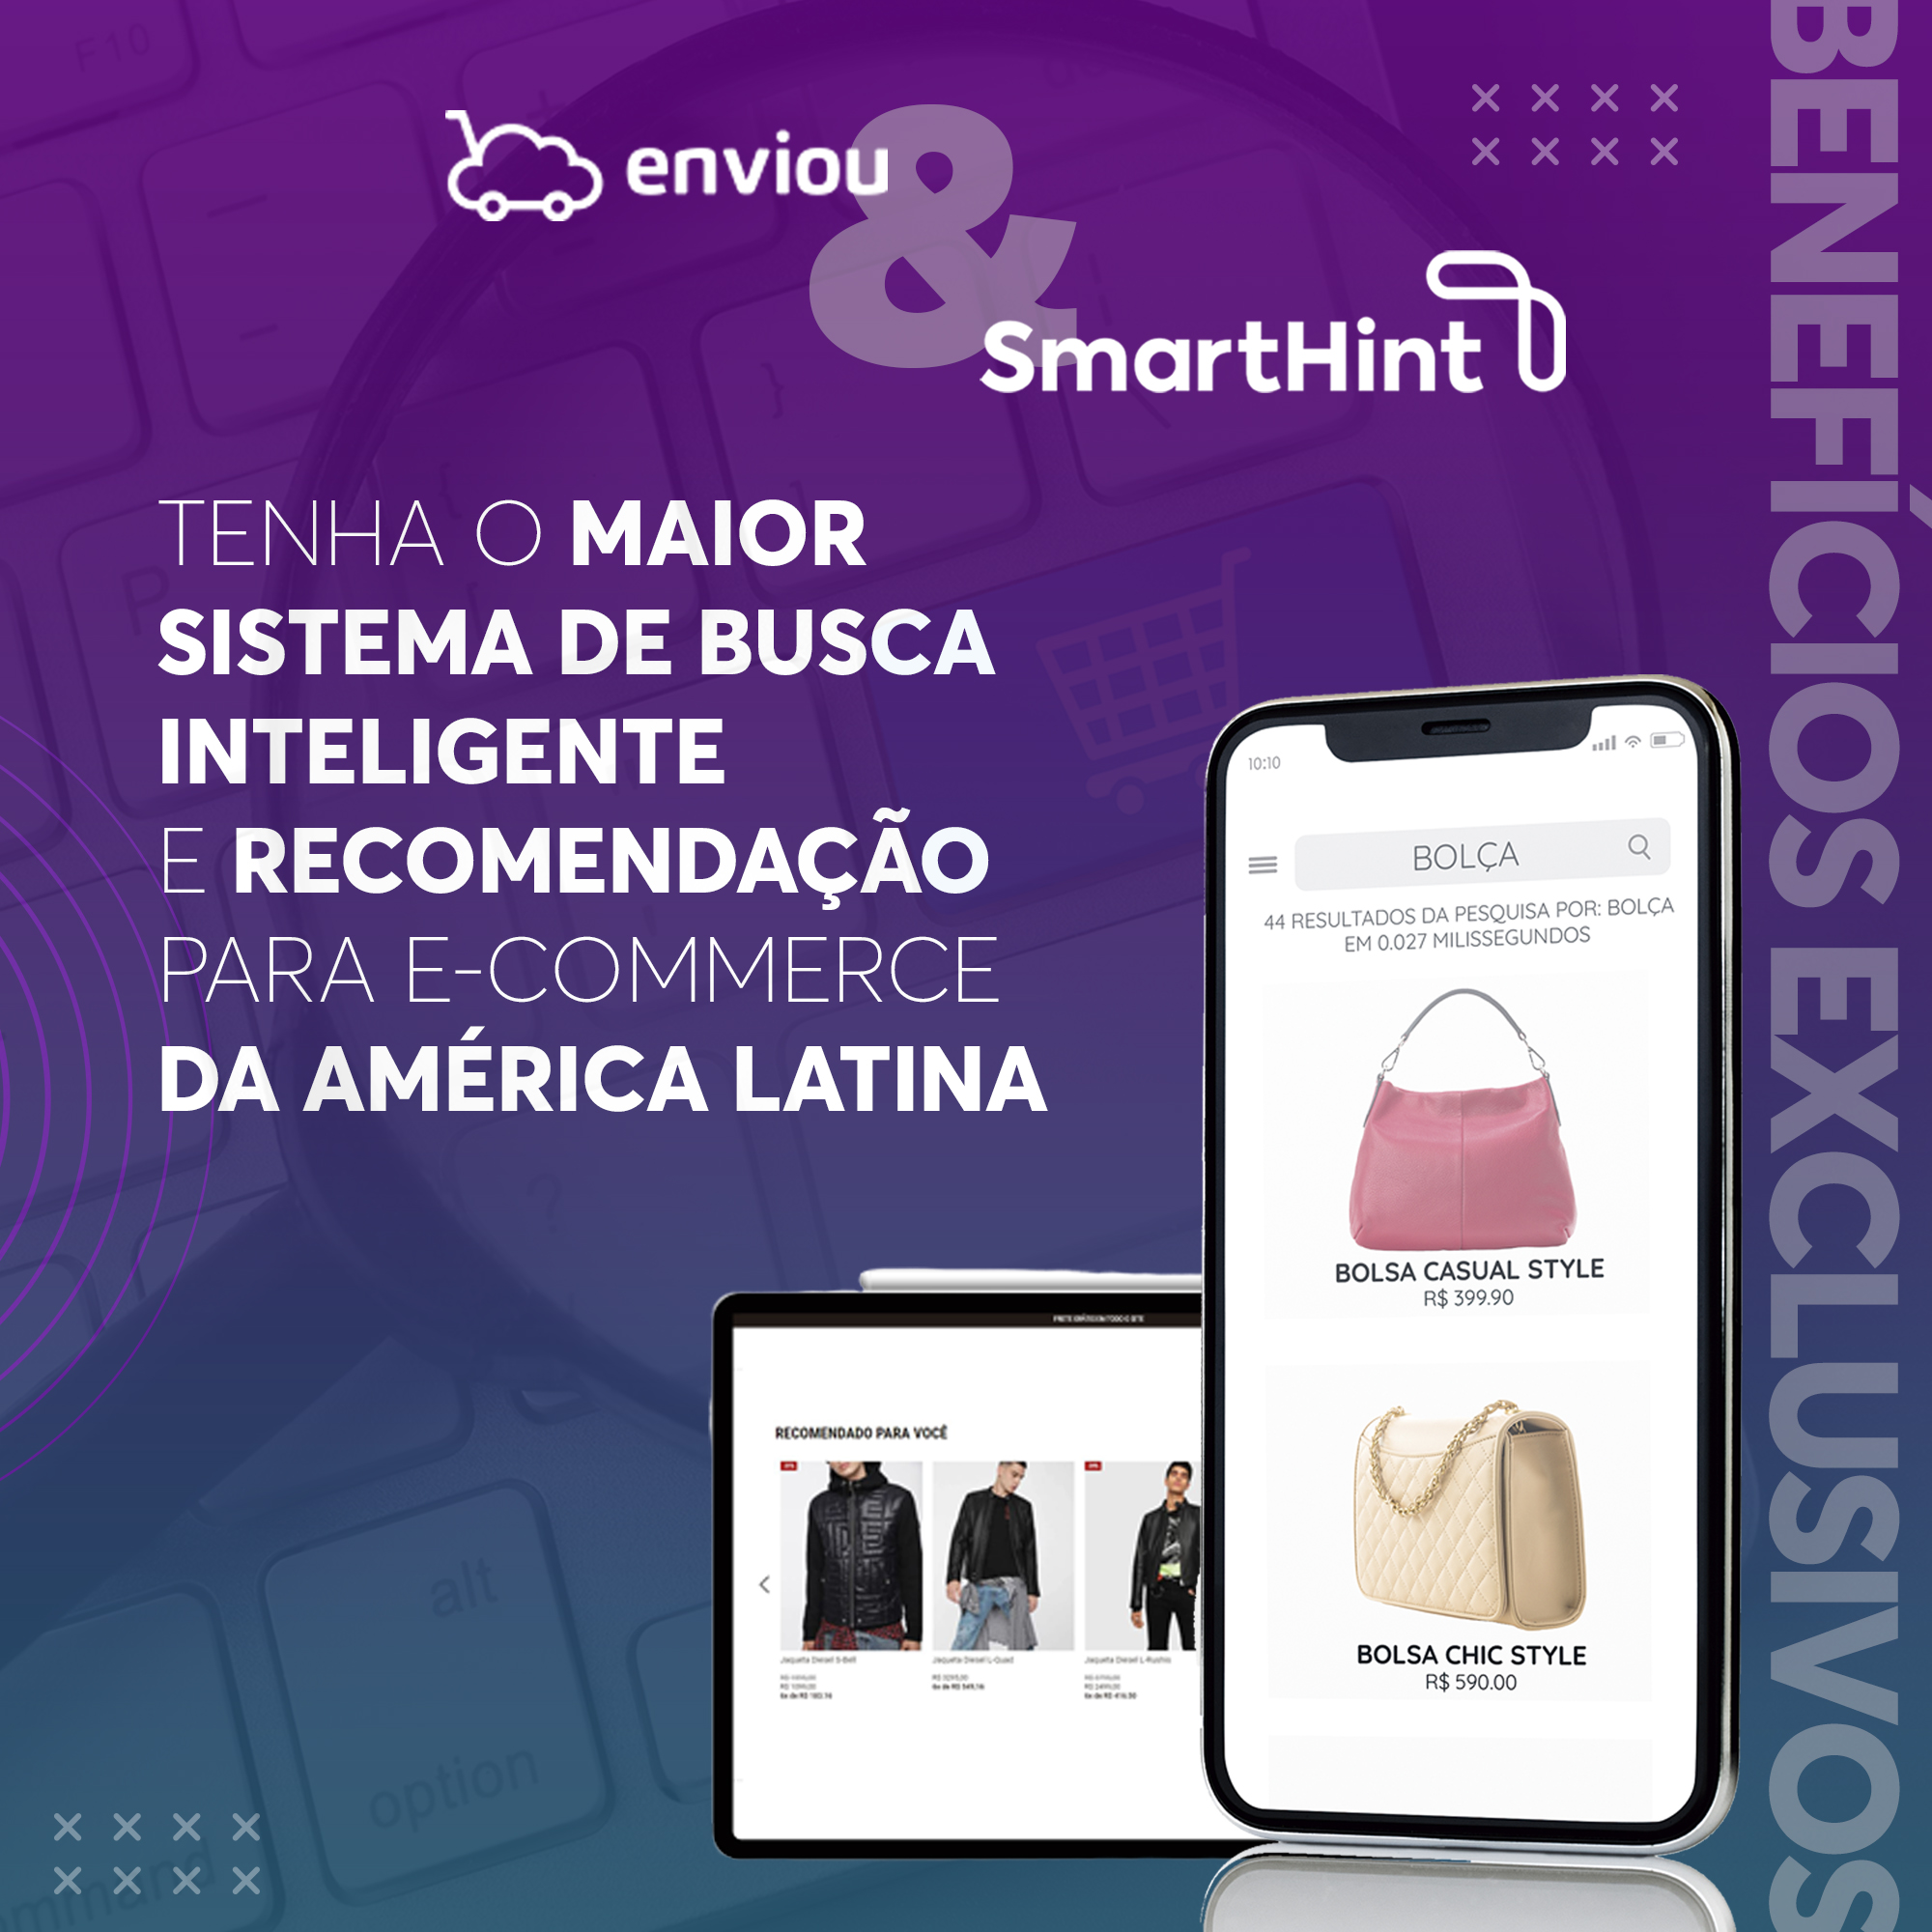 Eleve a experiência do seu e-commerce com a busca inteligente da SmartHint